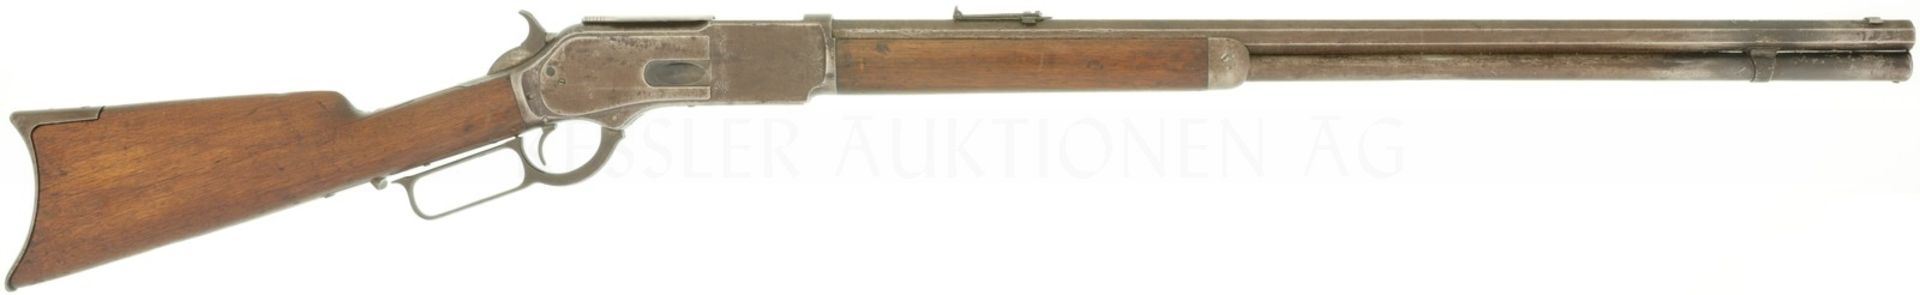 Unterhebelrepetierbüchse, Winchester Mod. 1876, Kal. 45-75Win